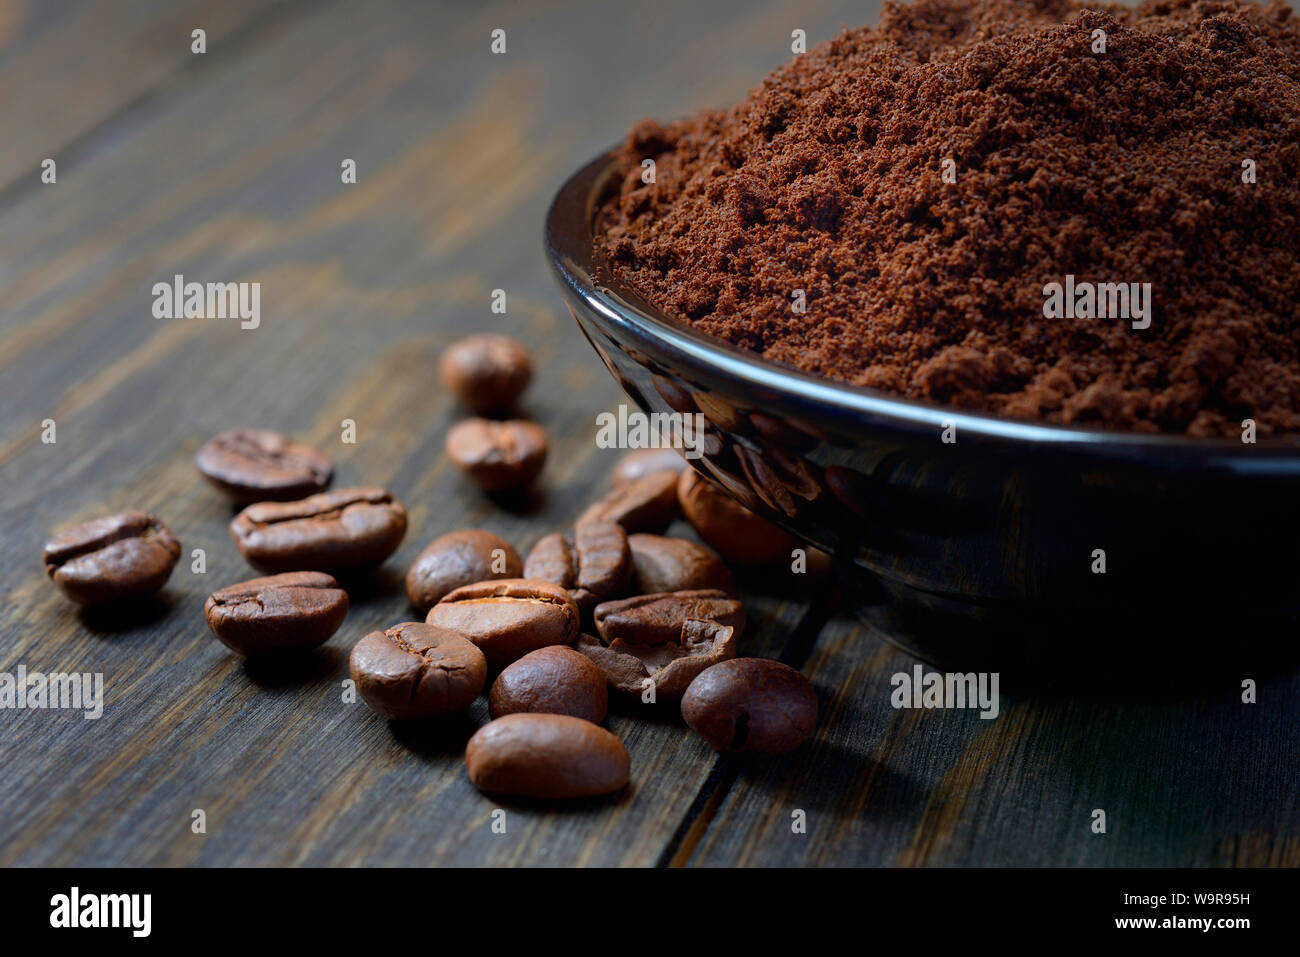 Les grains de café et la poudre de café, Coffea arabica Banque D'Images